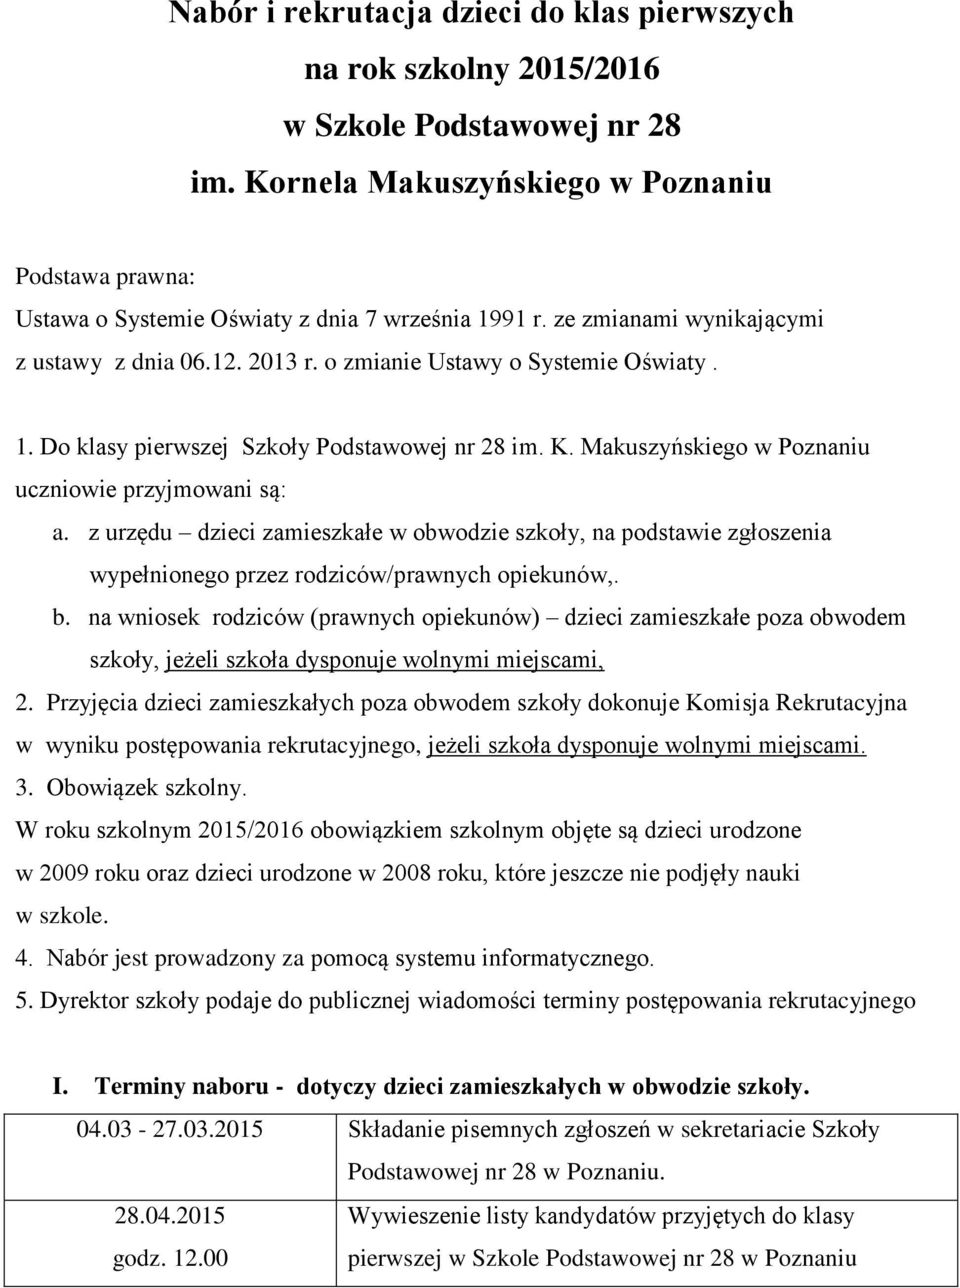 K. Makuszyńskiego w Poznaniu uczniowie przyjmowani są: a. z urzędu dzieci zamieszkałe w obwodzie szkoły, na podstawie zgłoszenia wypełnionego przez rodziców/prawnych opiekunów,. b.